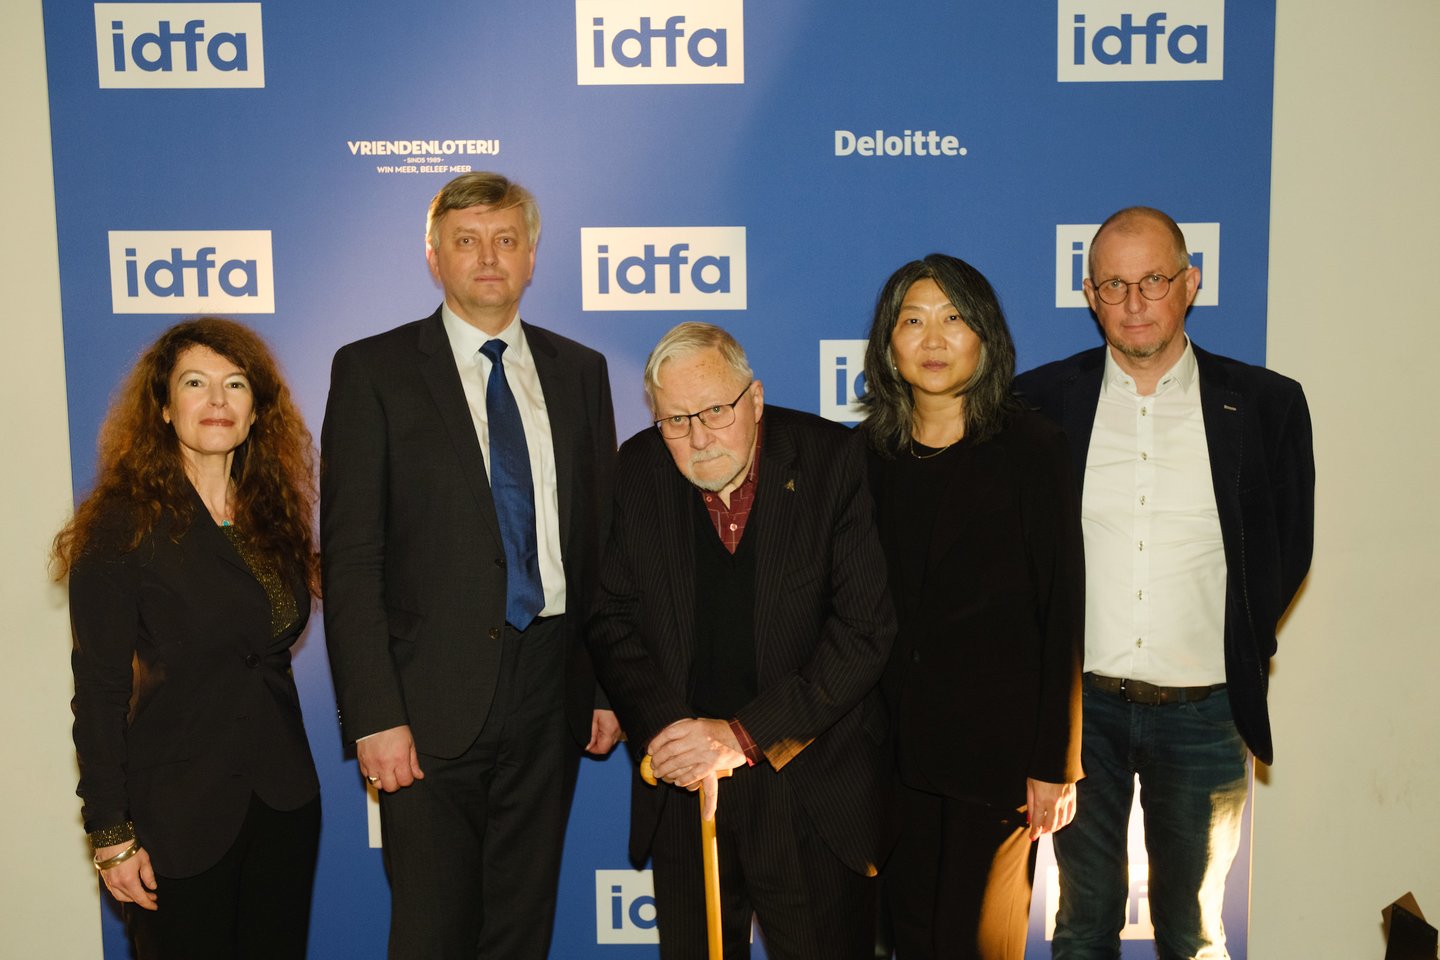 Prodiuserė Marija Choustova, režisierius Sergejus Loznica, profesorius Vytautas Landsbergis, prodiuserė Uljana Kim, rašytojas Vytautas V. Landsbergis (iš kairės į dešinę).<br>IDFA nuotr.